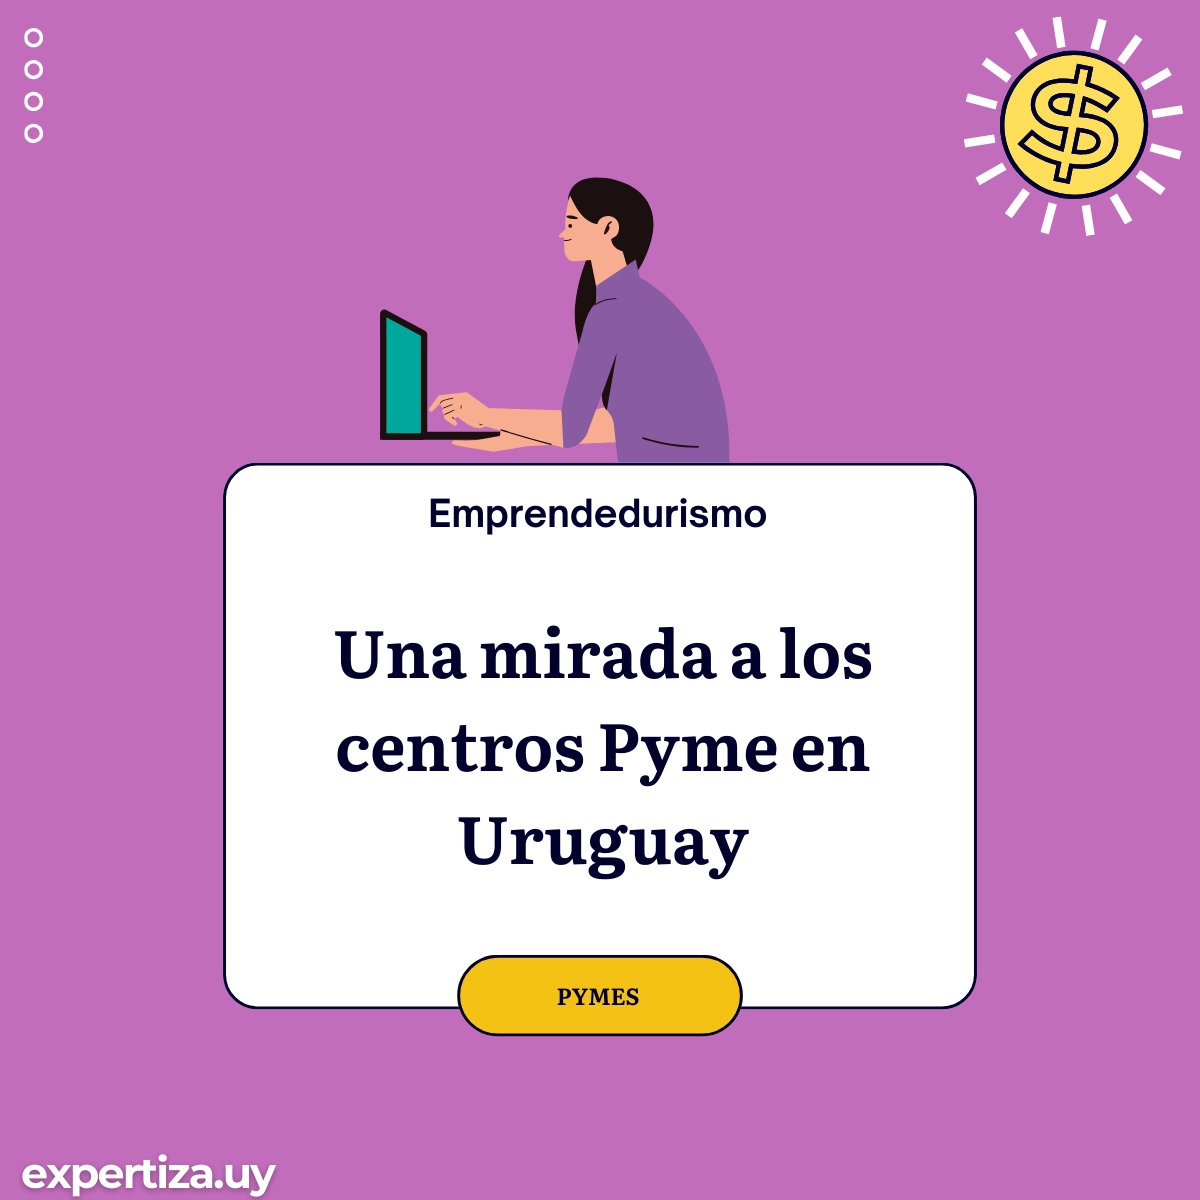 Una mirada a los centros Pyme en Uruguay.